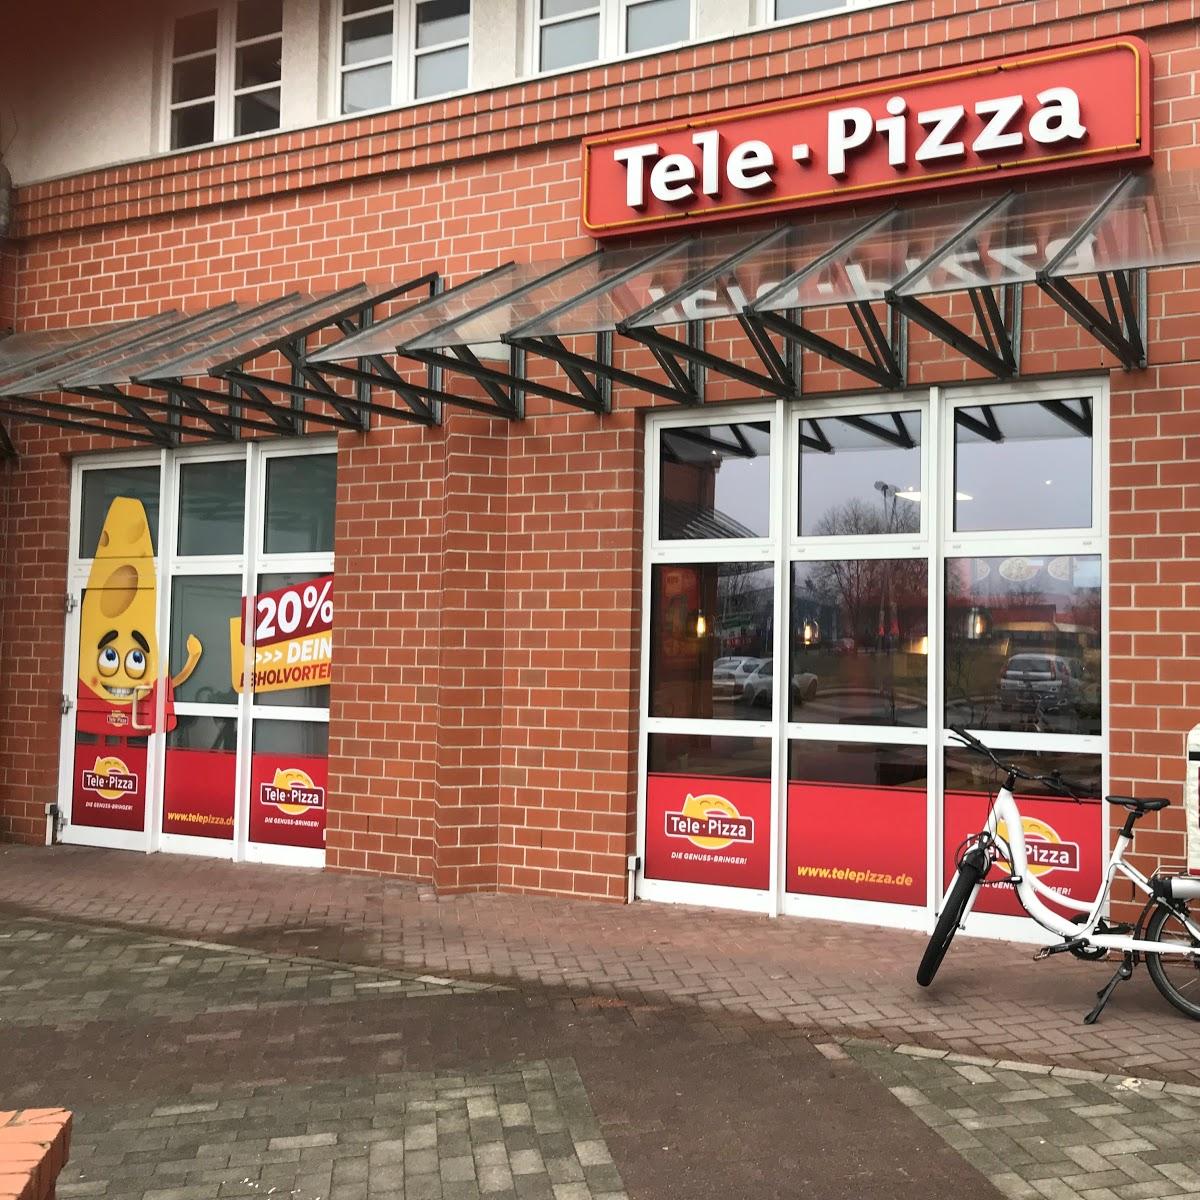 Restaurant "Tele Pizza" in Spremberg